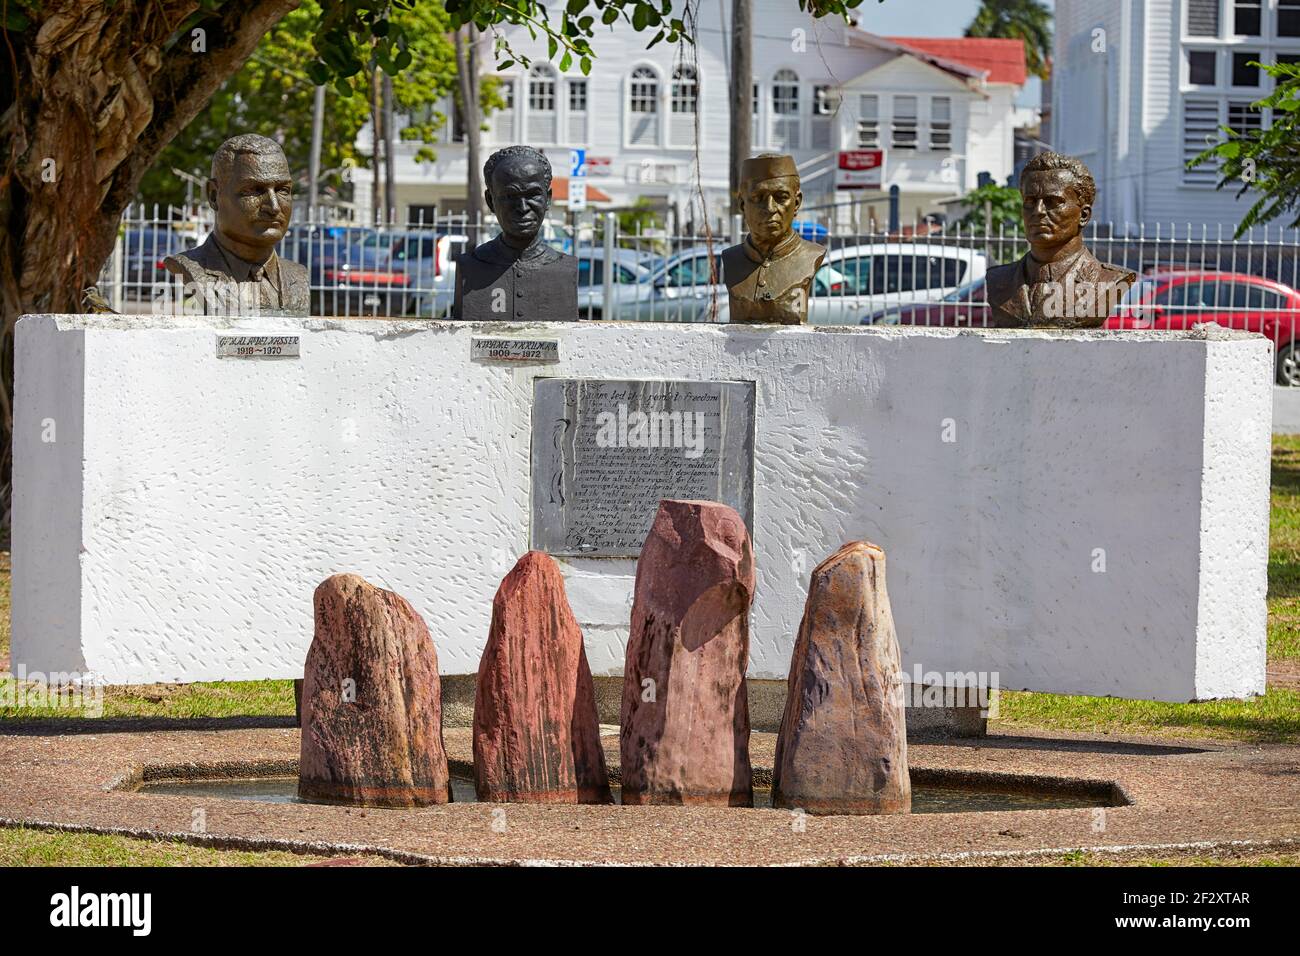 Il Monumento del movimento non allineato in Georgetown Guyana Sud America Foto Stock